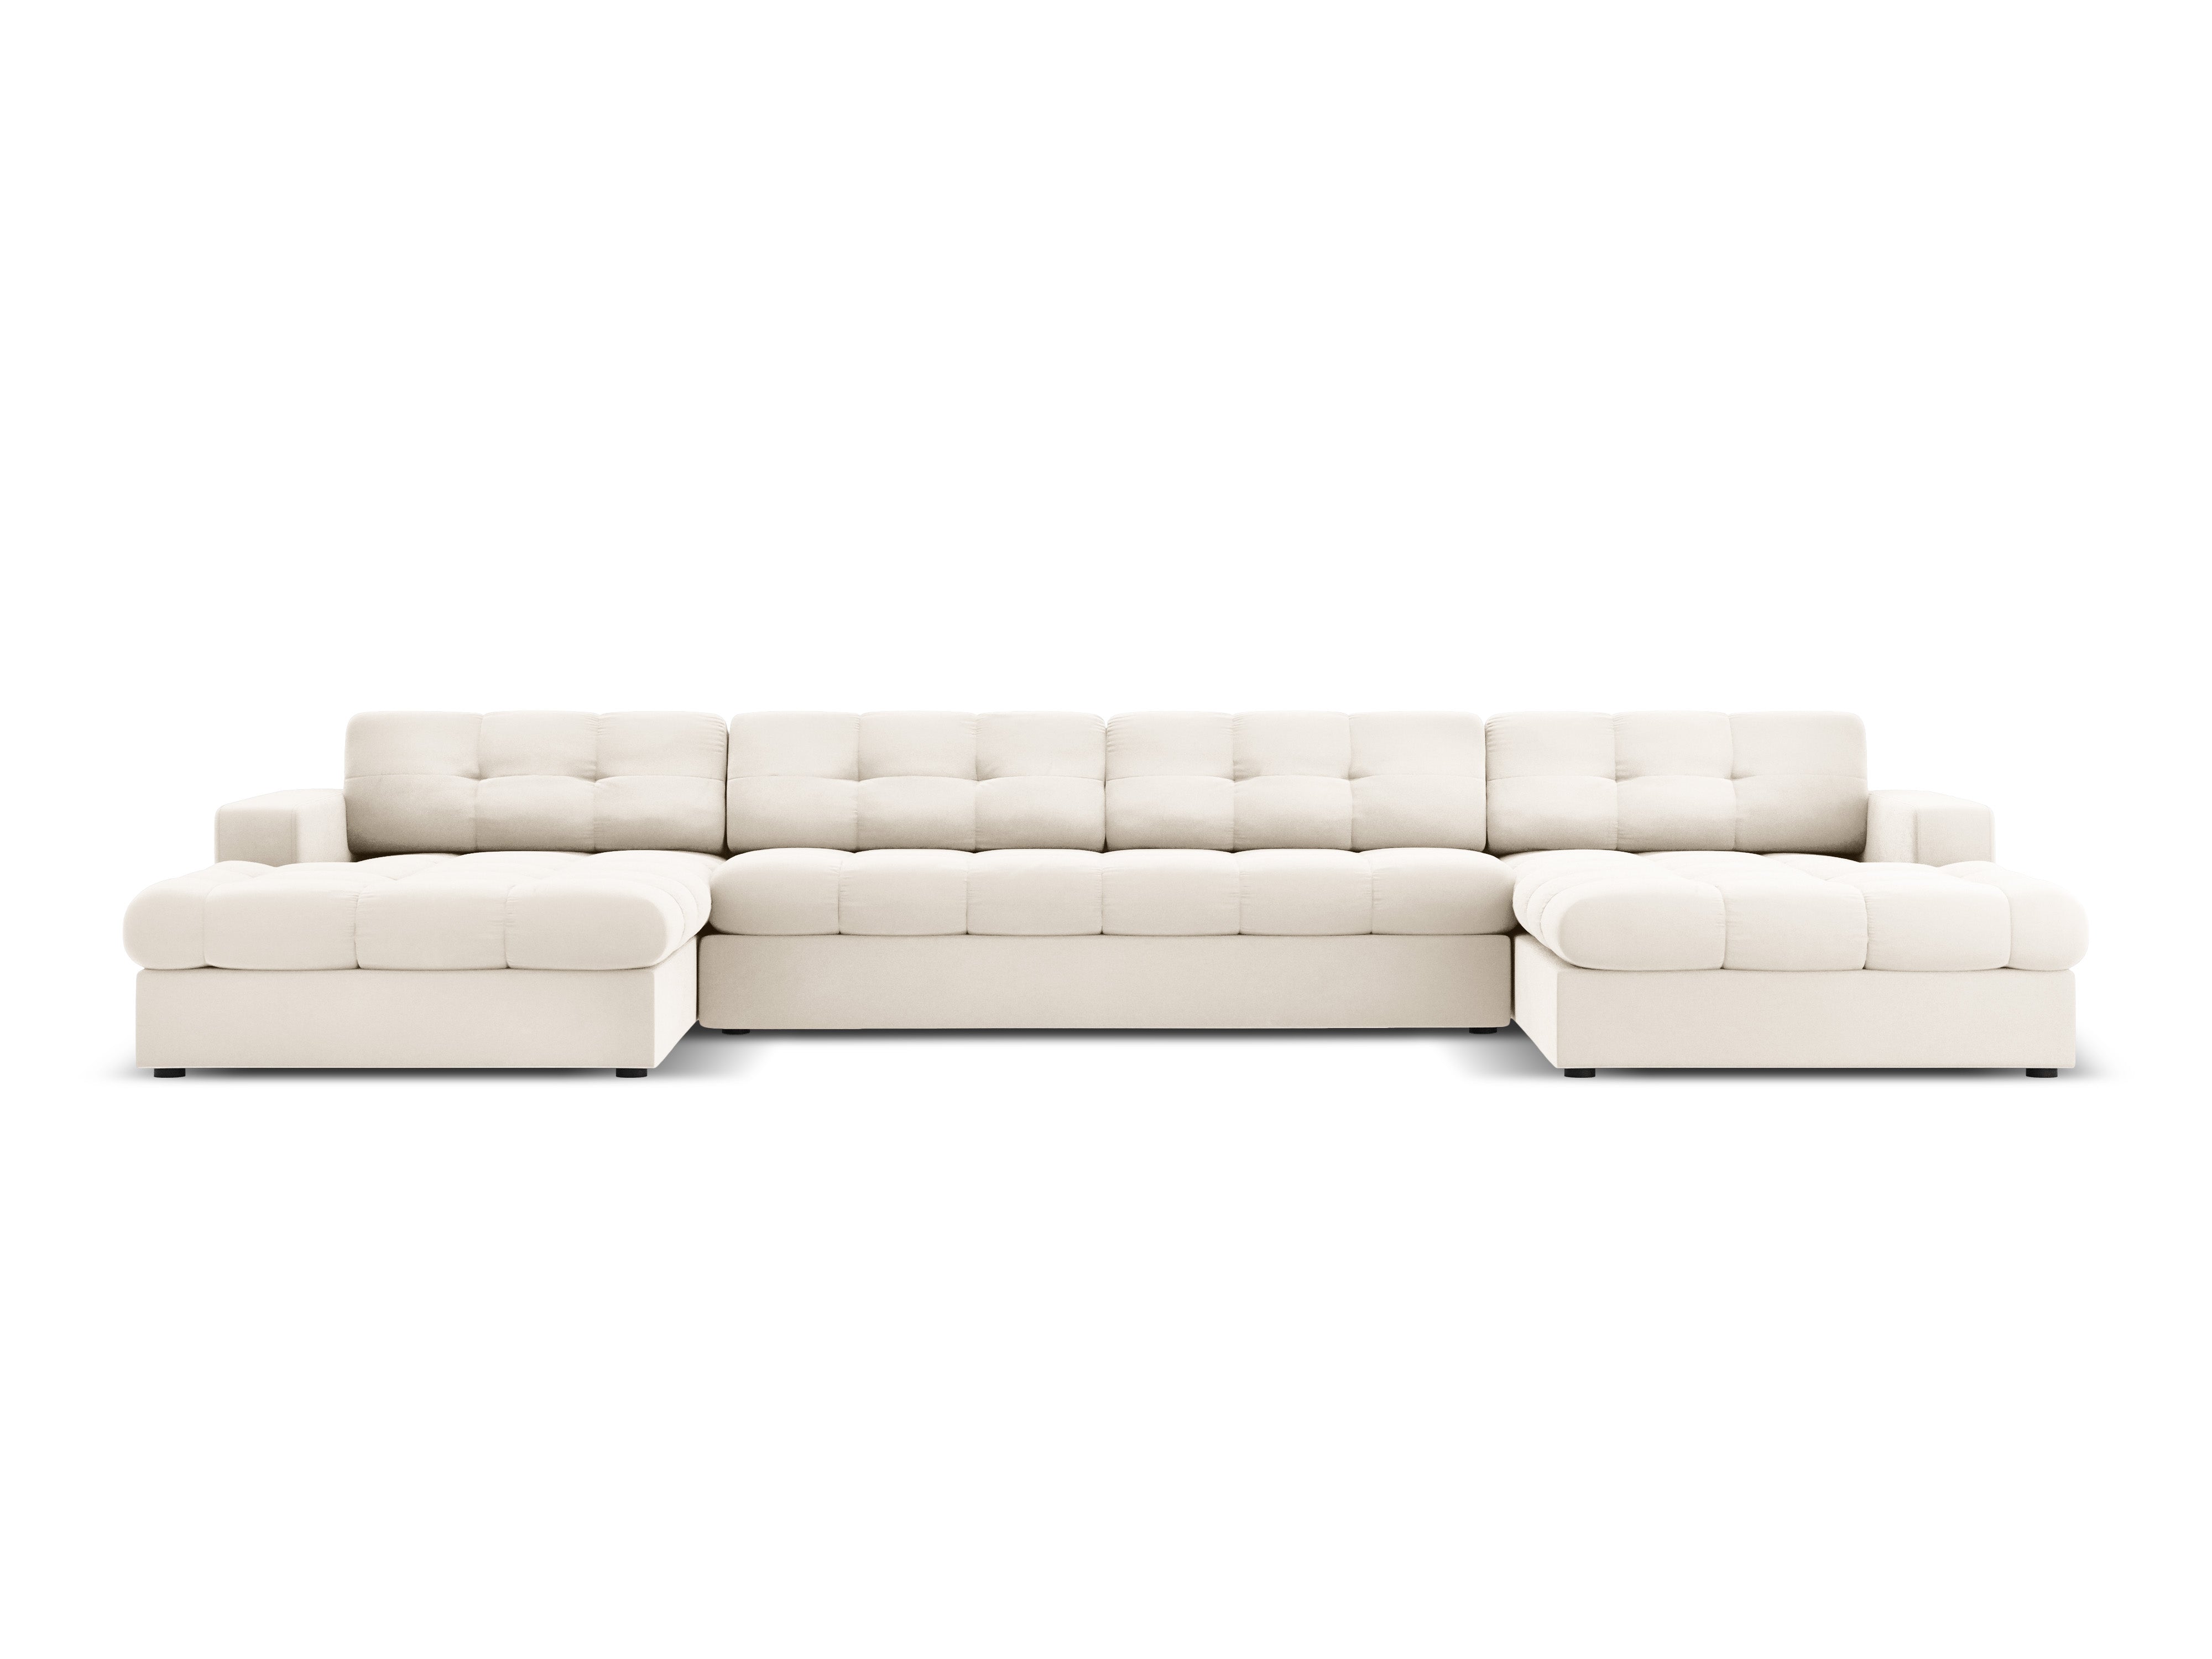 Velvet Panoramic Sofa, "Justin", 5 Seats, 294x160x72
Made in Europe, Micadoni, Eye on Design